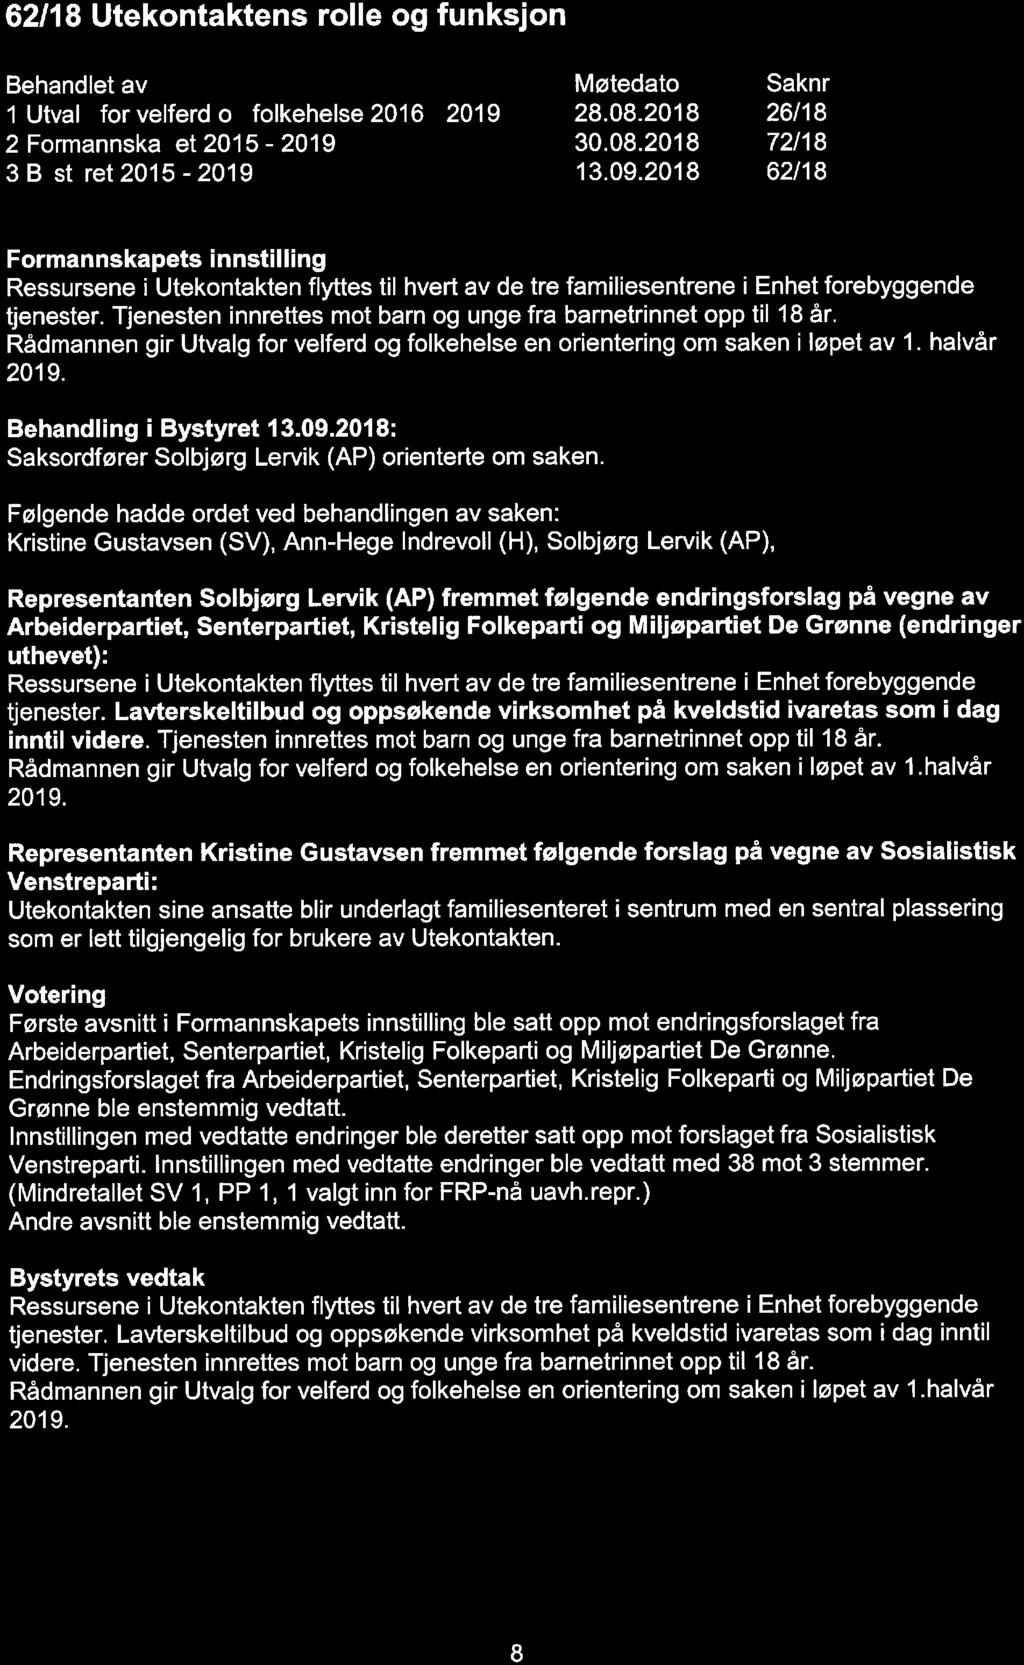 62/18 Utekontaktens rolle og funksjon 1 Utval for velferd o folkehelse 2016-2019 2 Formannska et 2015-2019 3 B st ret 2015-2019 28. 08. 2018 30. 08.2018 13. 09.